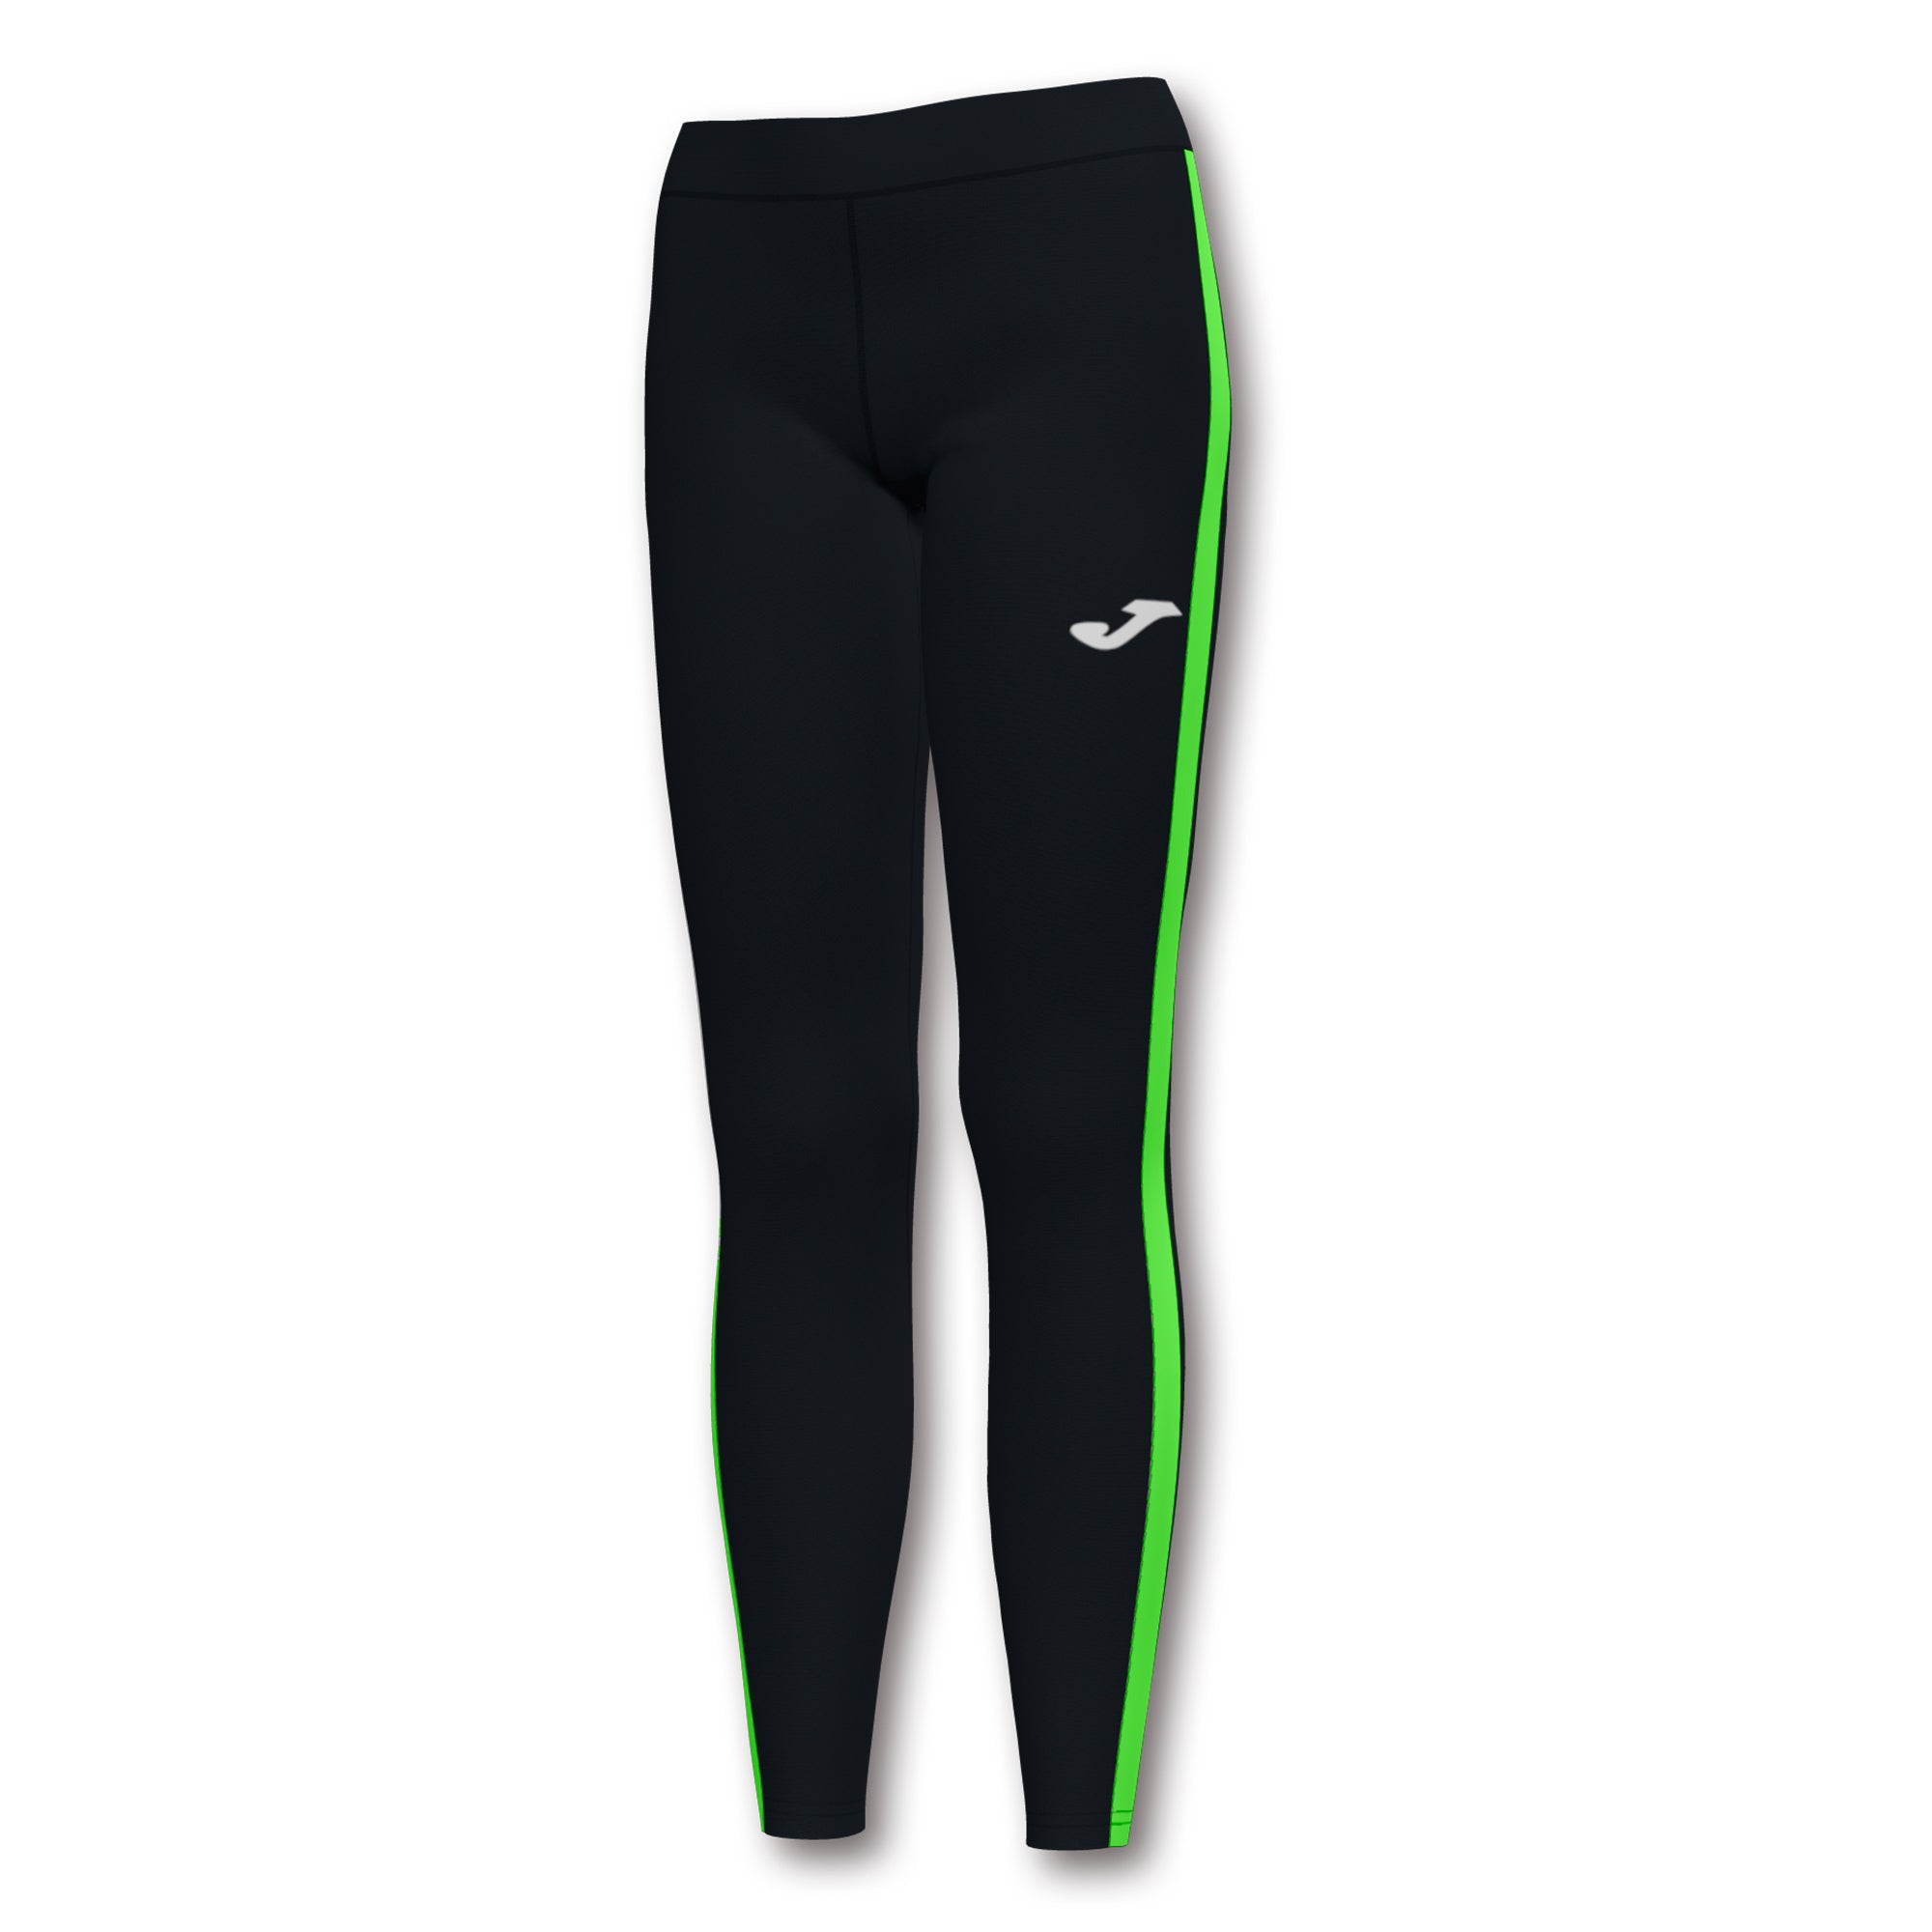 Collant lunghi Elite VII nero-verde-fluorescente (Uomo/Donna)